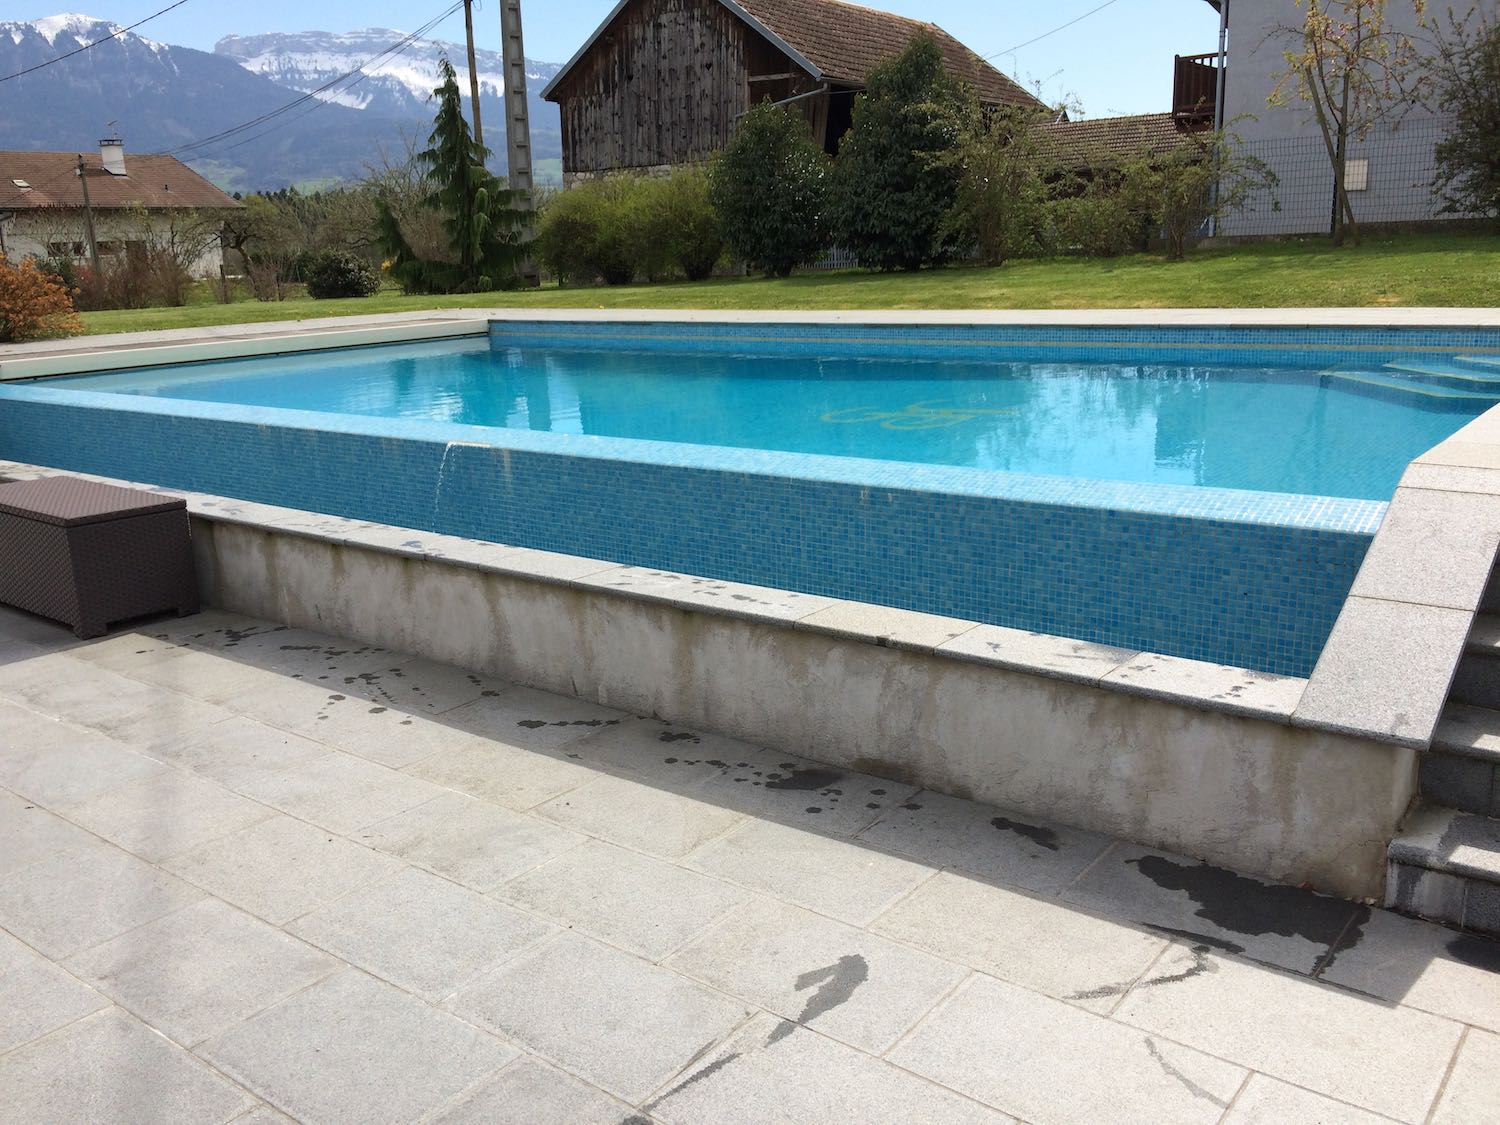 Rénovation piscine carrelage et débordement sur un côté